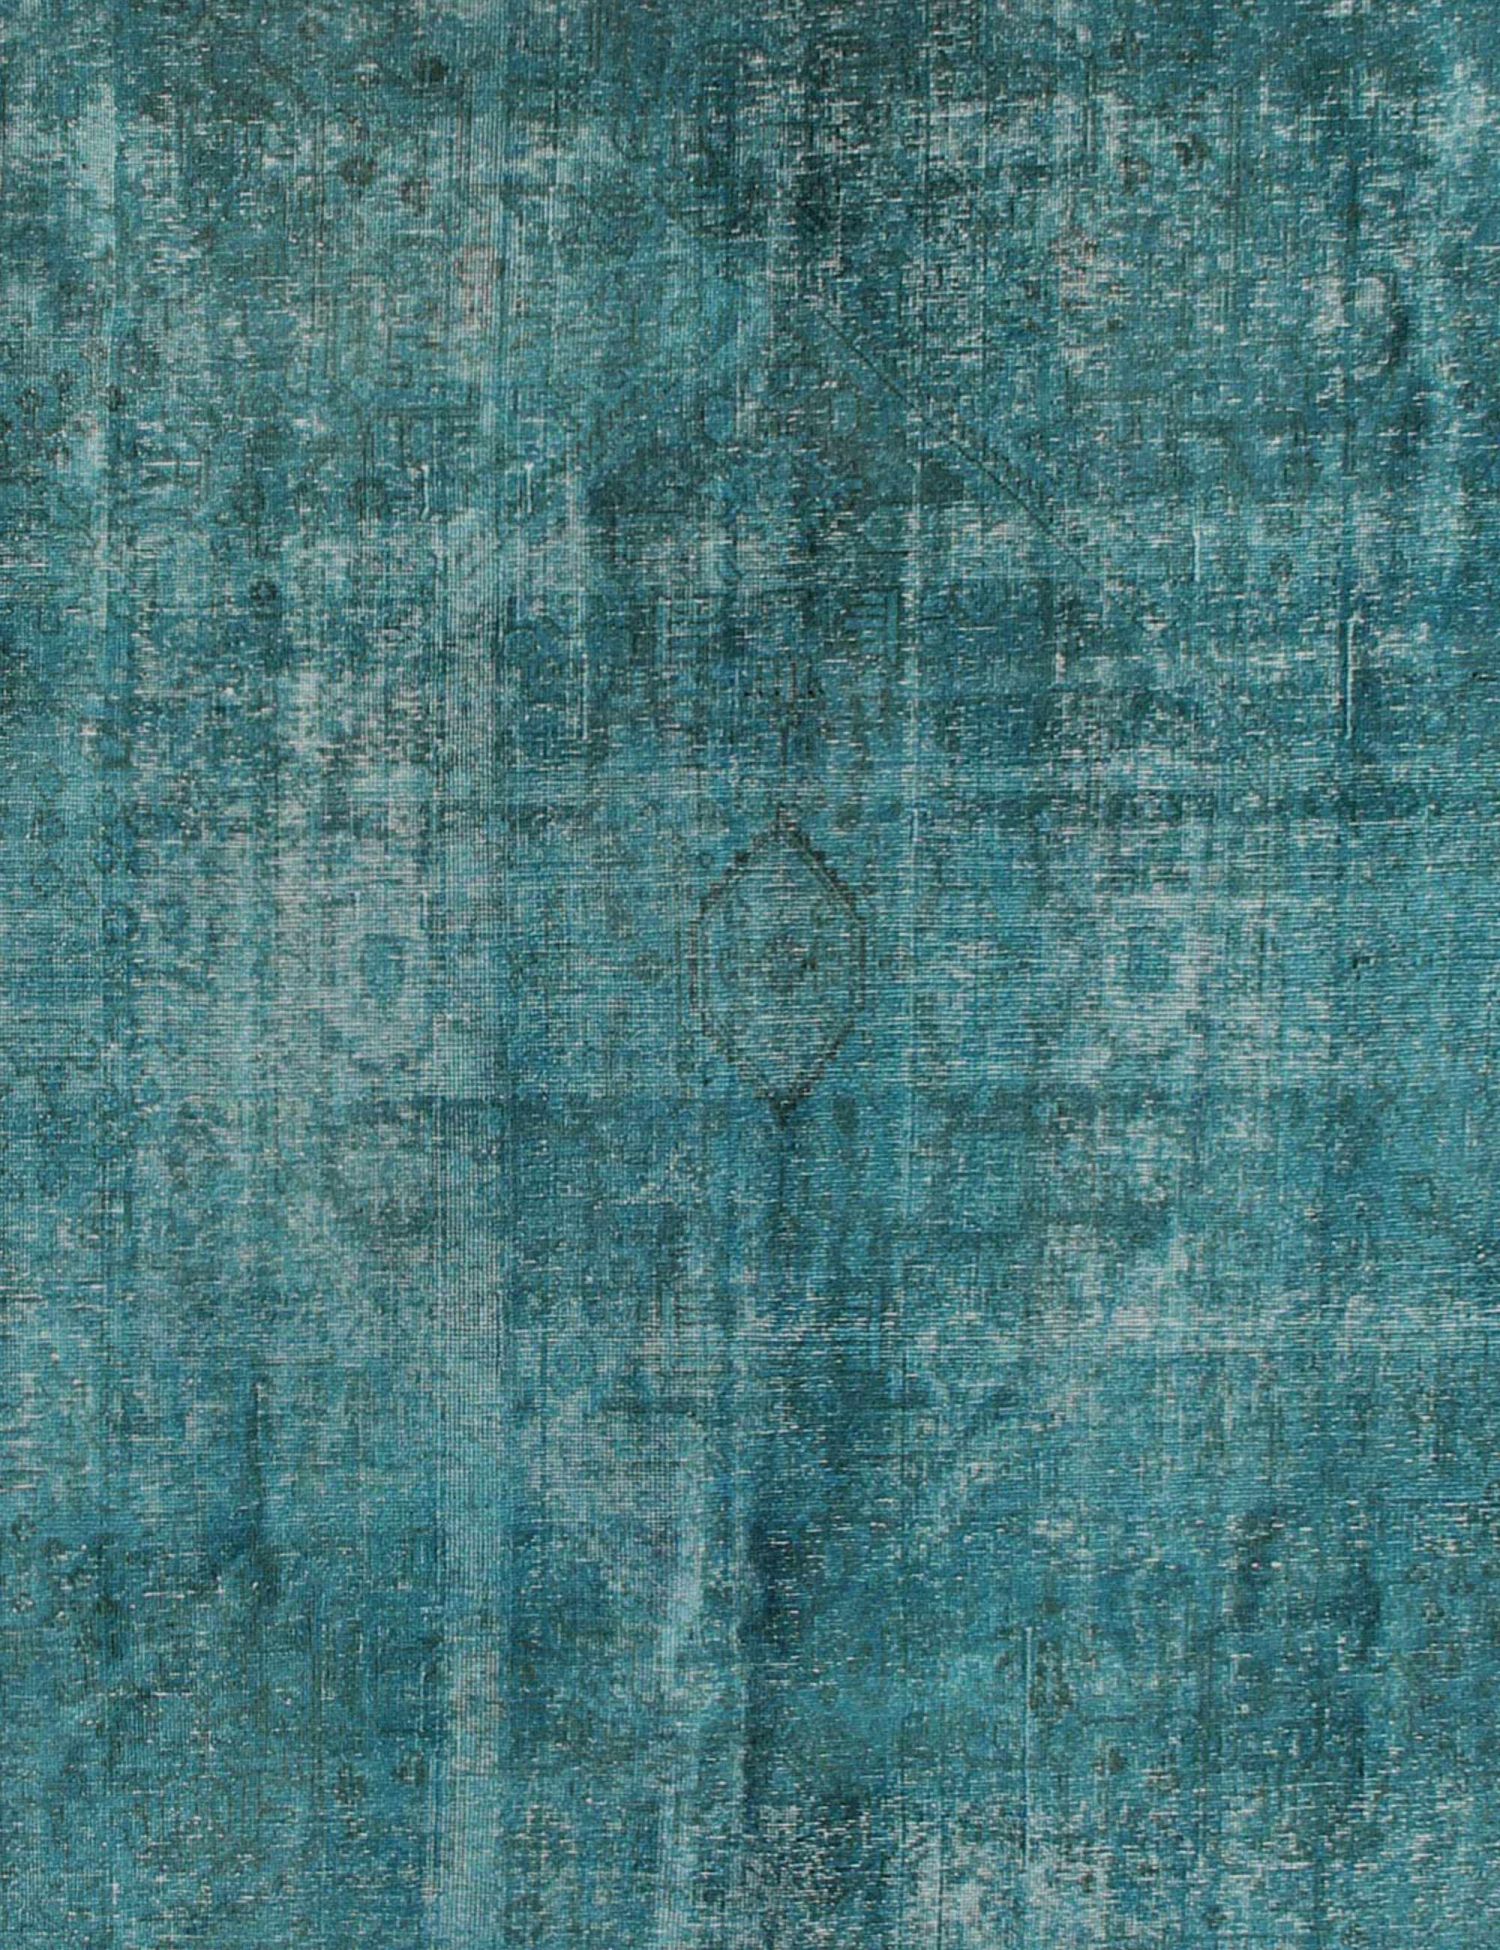 Persischer Vintage Teppich  türkis <br/>350 x 290 cm